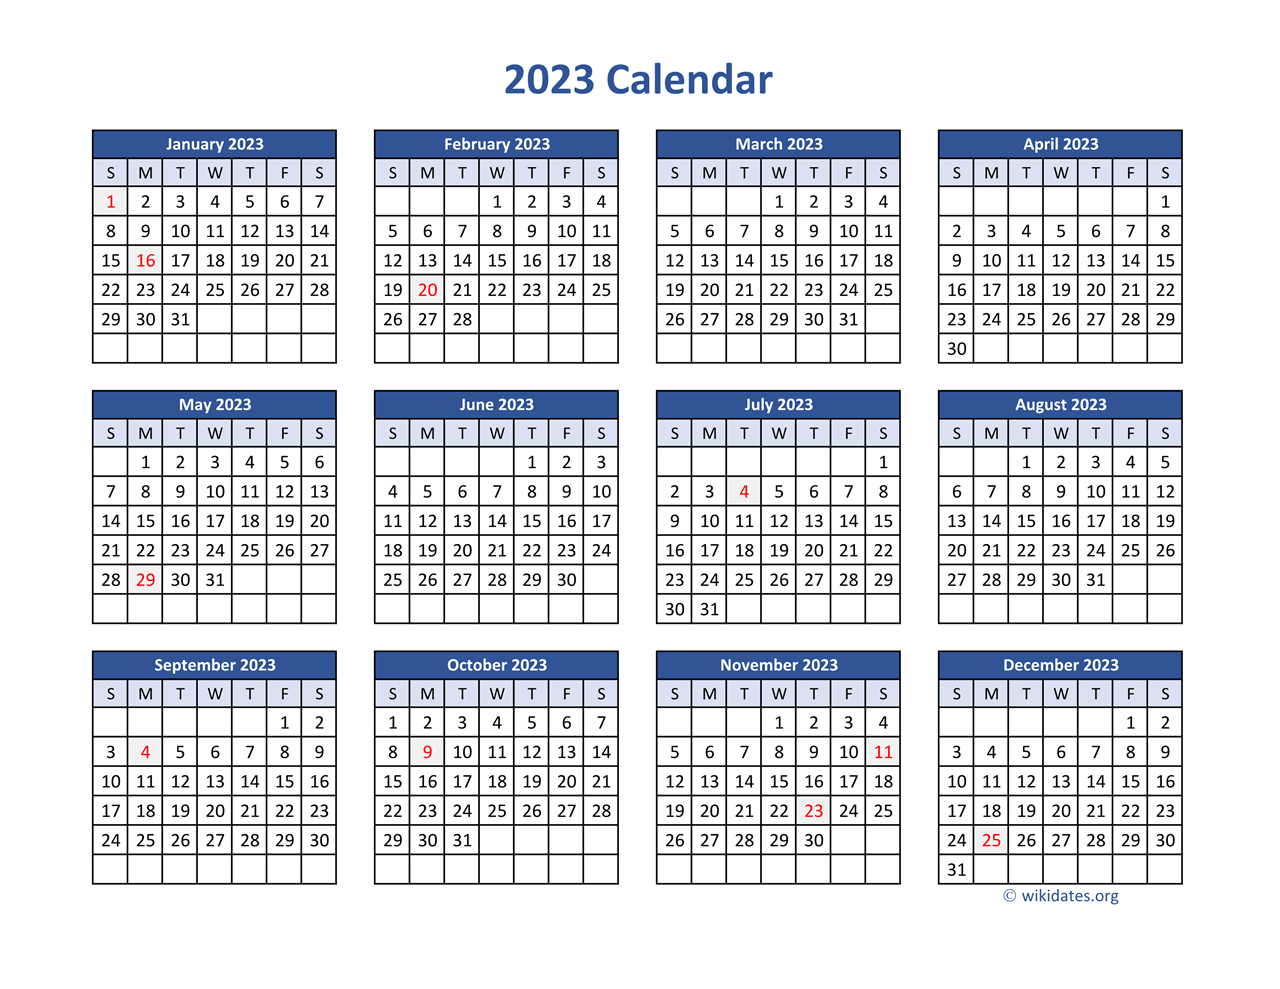 2023 Calendar in PDF | WikiDates.org